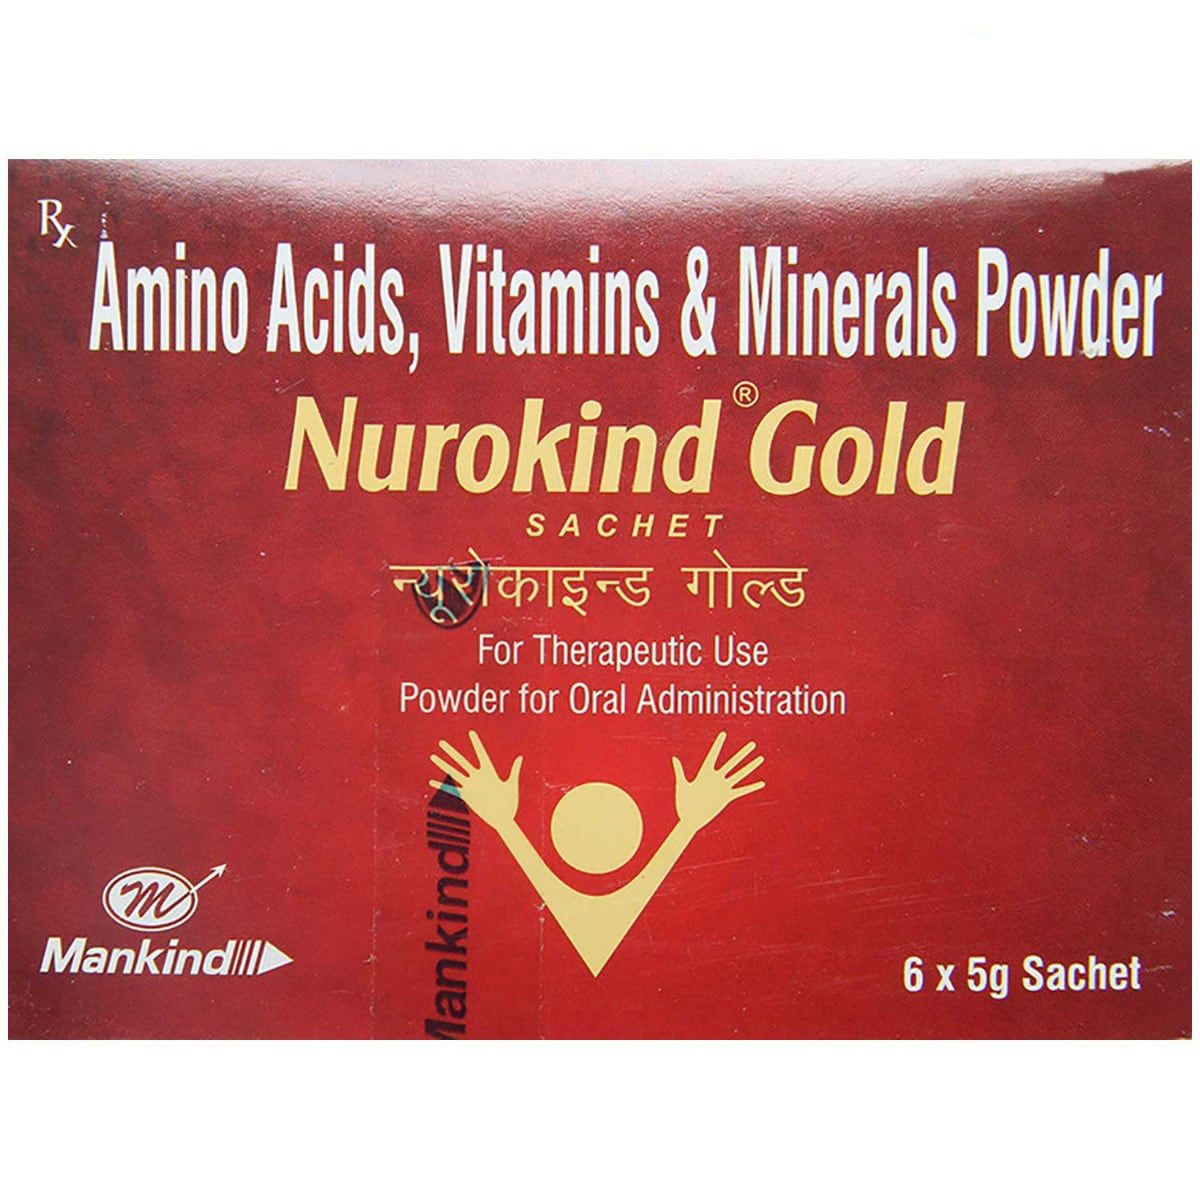 Buy Nurokind Gold Sachet 5 gm Online